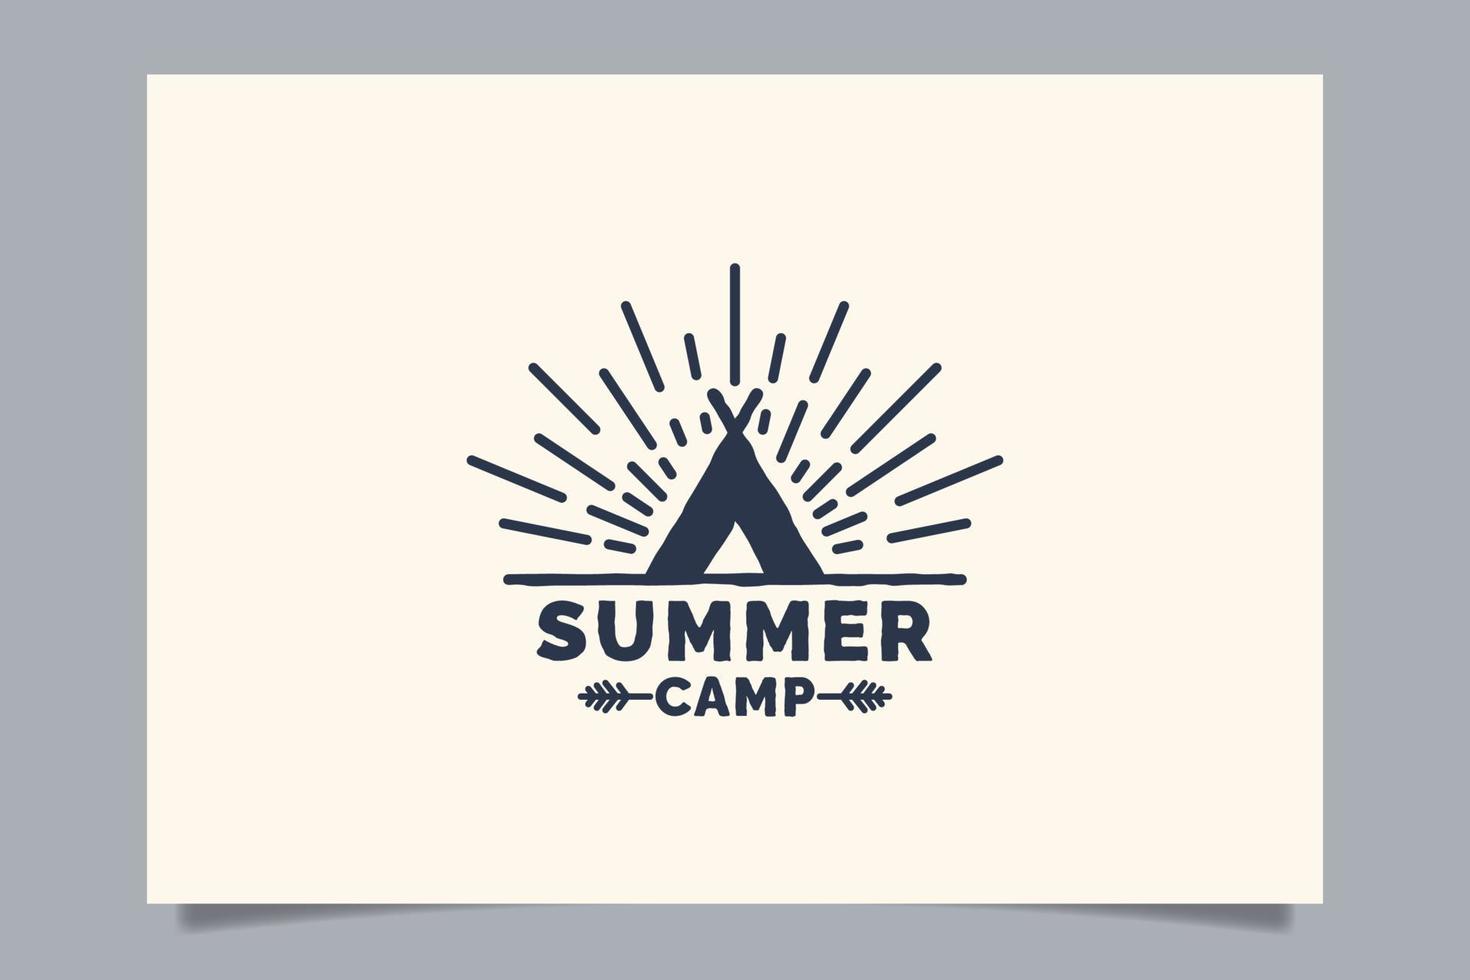 Sommercamp-Logo für jedes Unternehmen, insbesondere für Outdoor-Aktivitäten, Sommerferien, Sport, Abenteuer usw. vektor